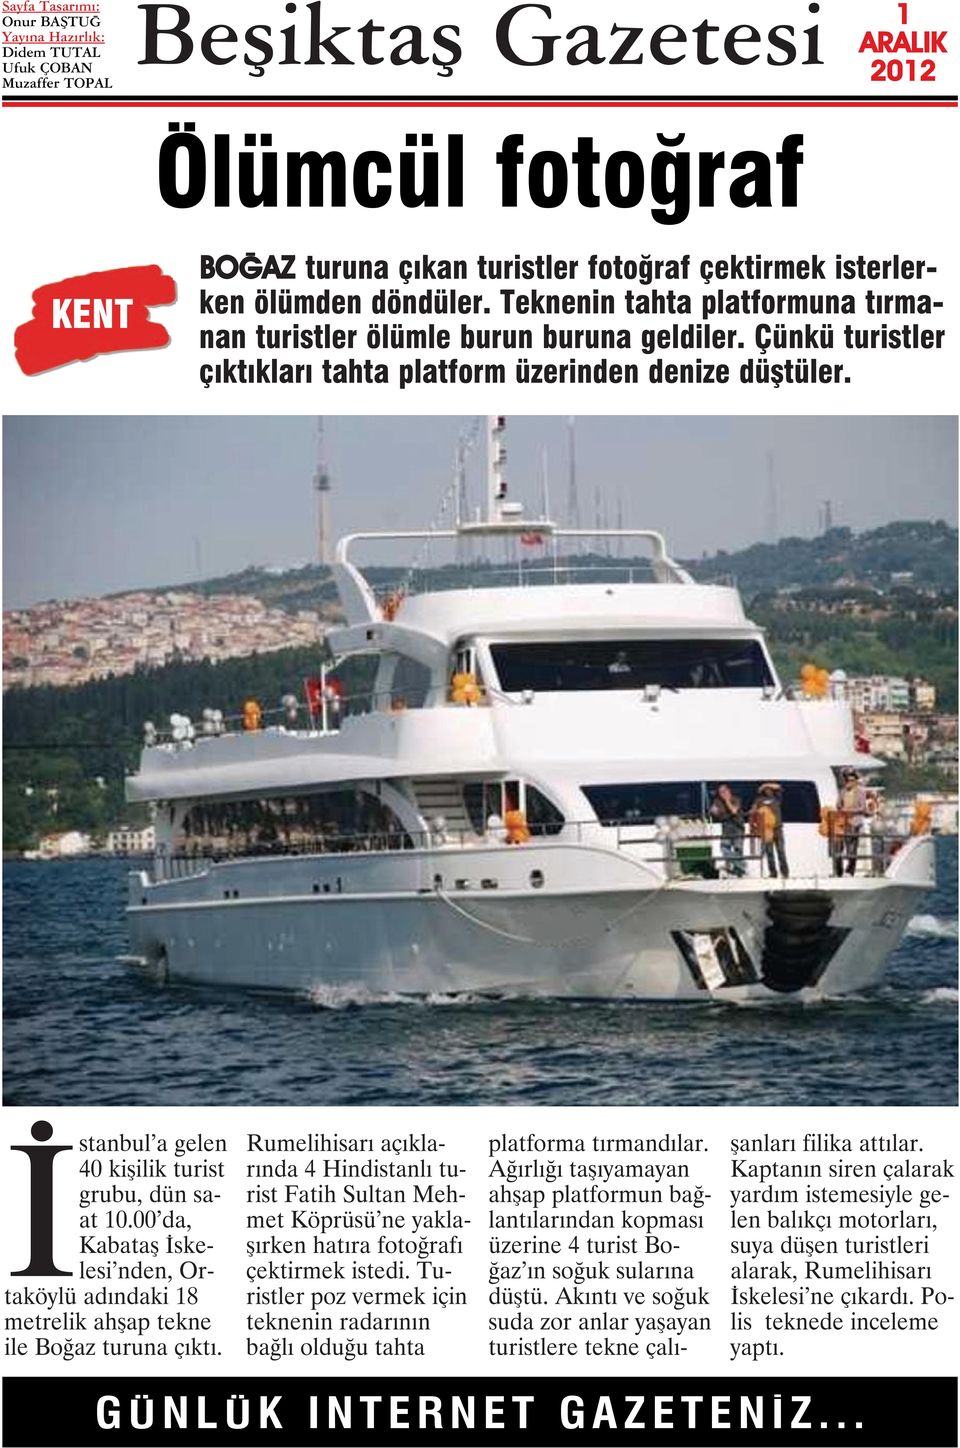 00 da, Kabataş İskelesi nden, Ortaköylü adındaki 8 metrelik ahşap tekne ile Boğaz turuna çıktı.